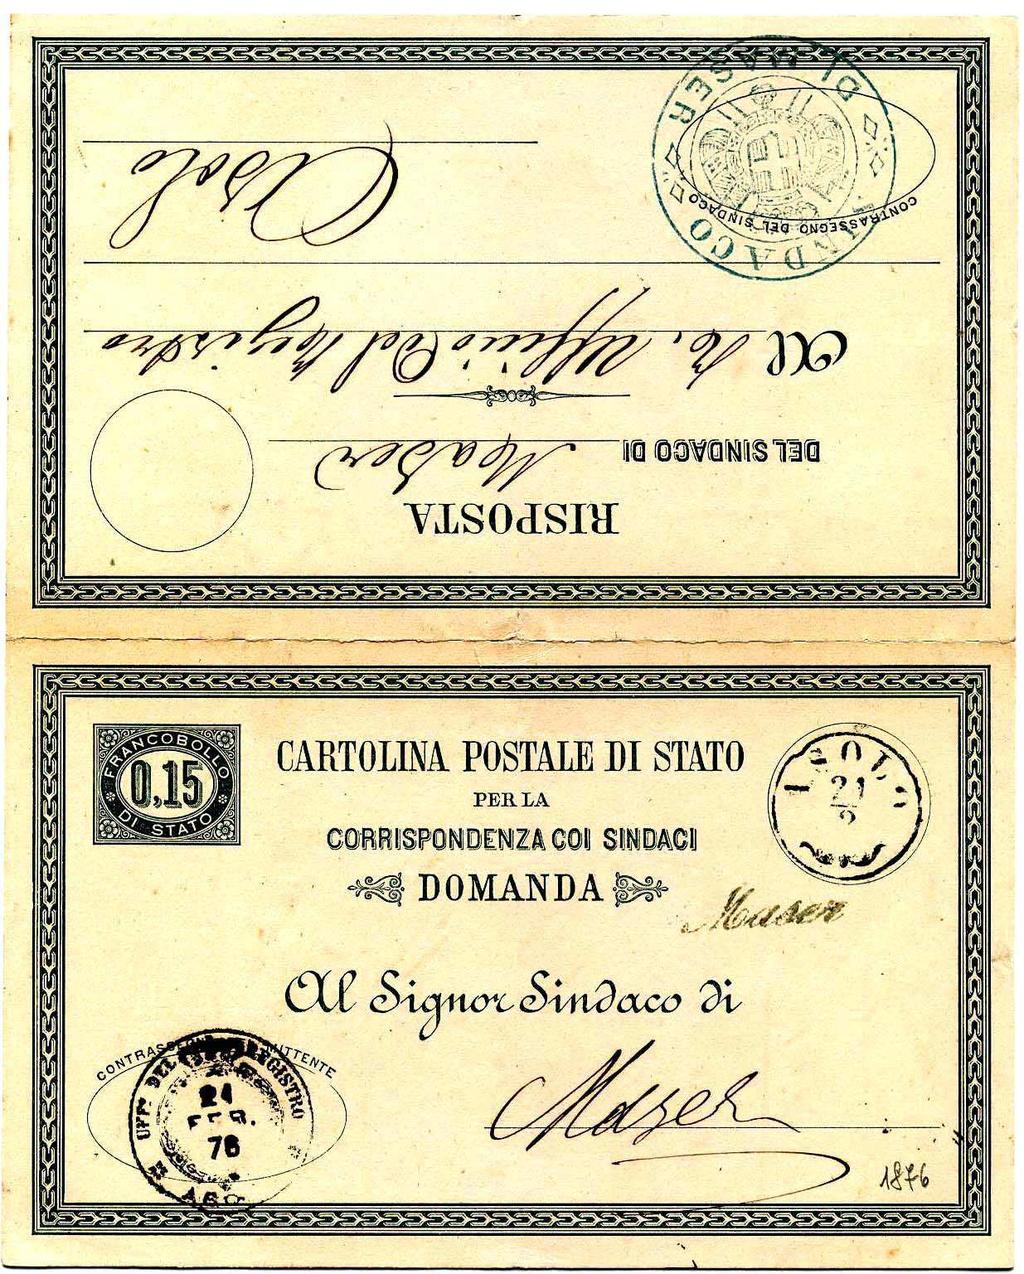 Anche questa cartolina, per gli stessi motivi di quella da 10 cent., fu ritirata il 31.12.1876 ASOLO 21/2 1876 Bollo austriaco abbinato col bollo di collettoria MASER.